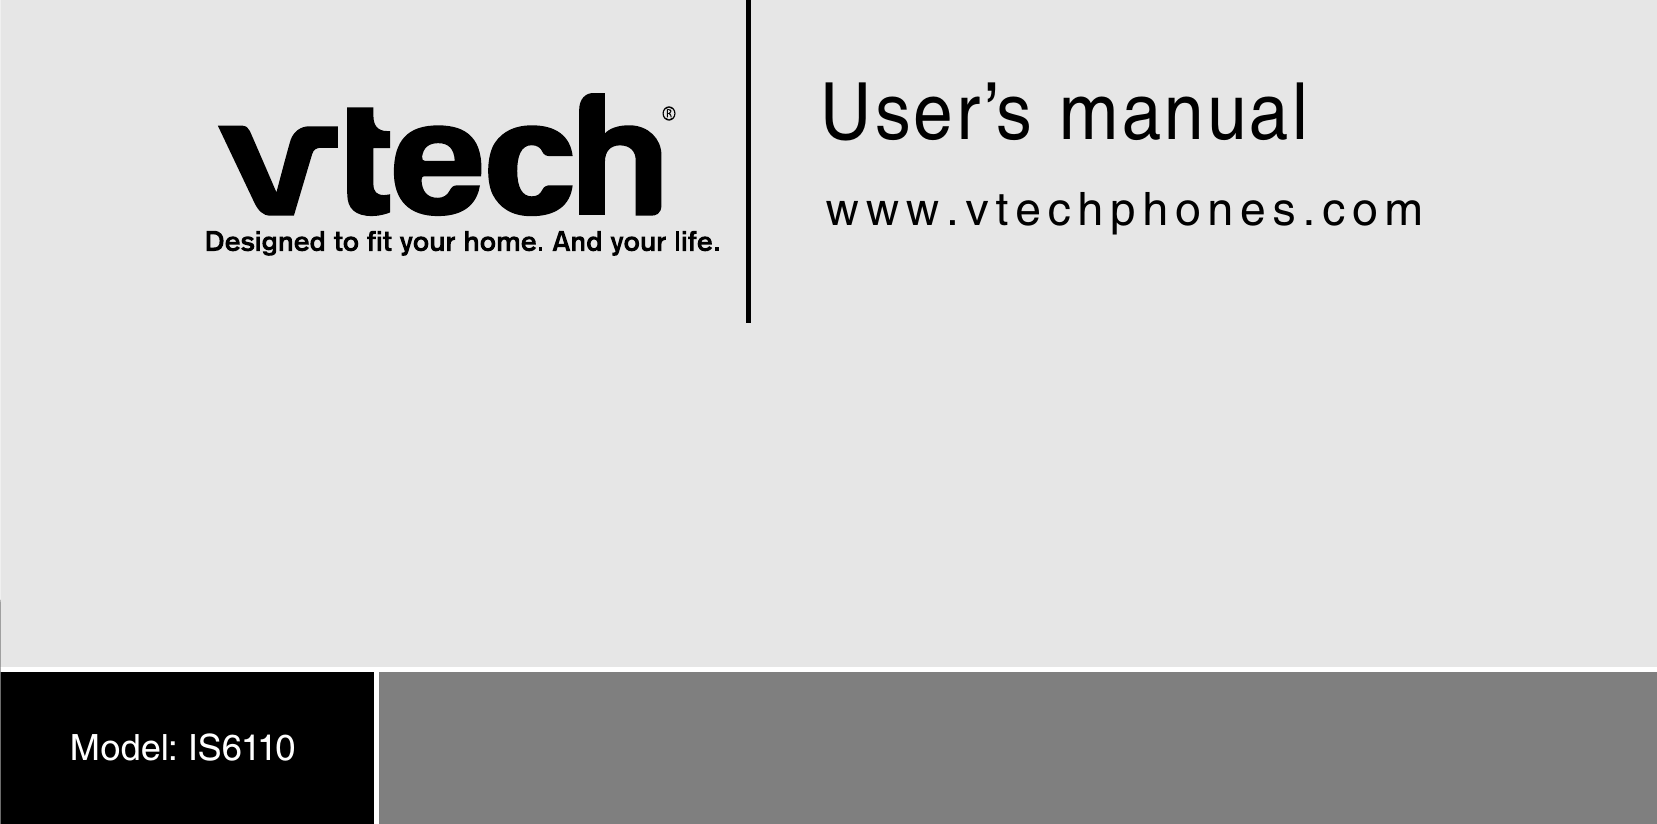 User’s manualwww.vtechphones.comModel: IS6110